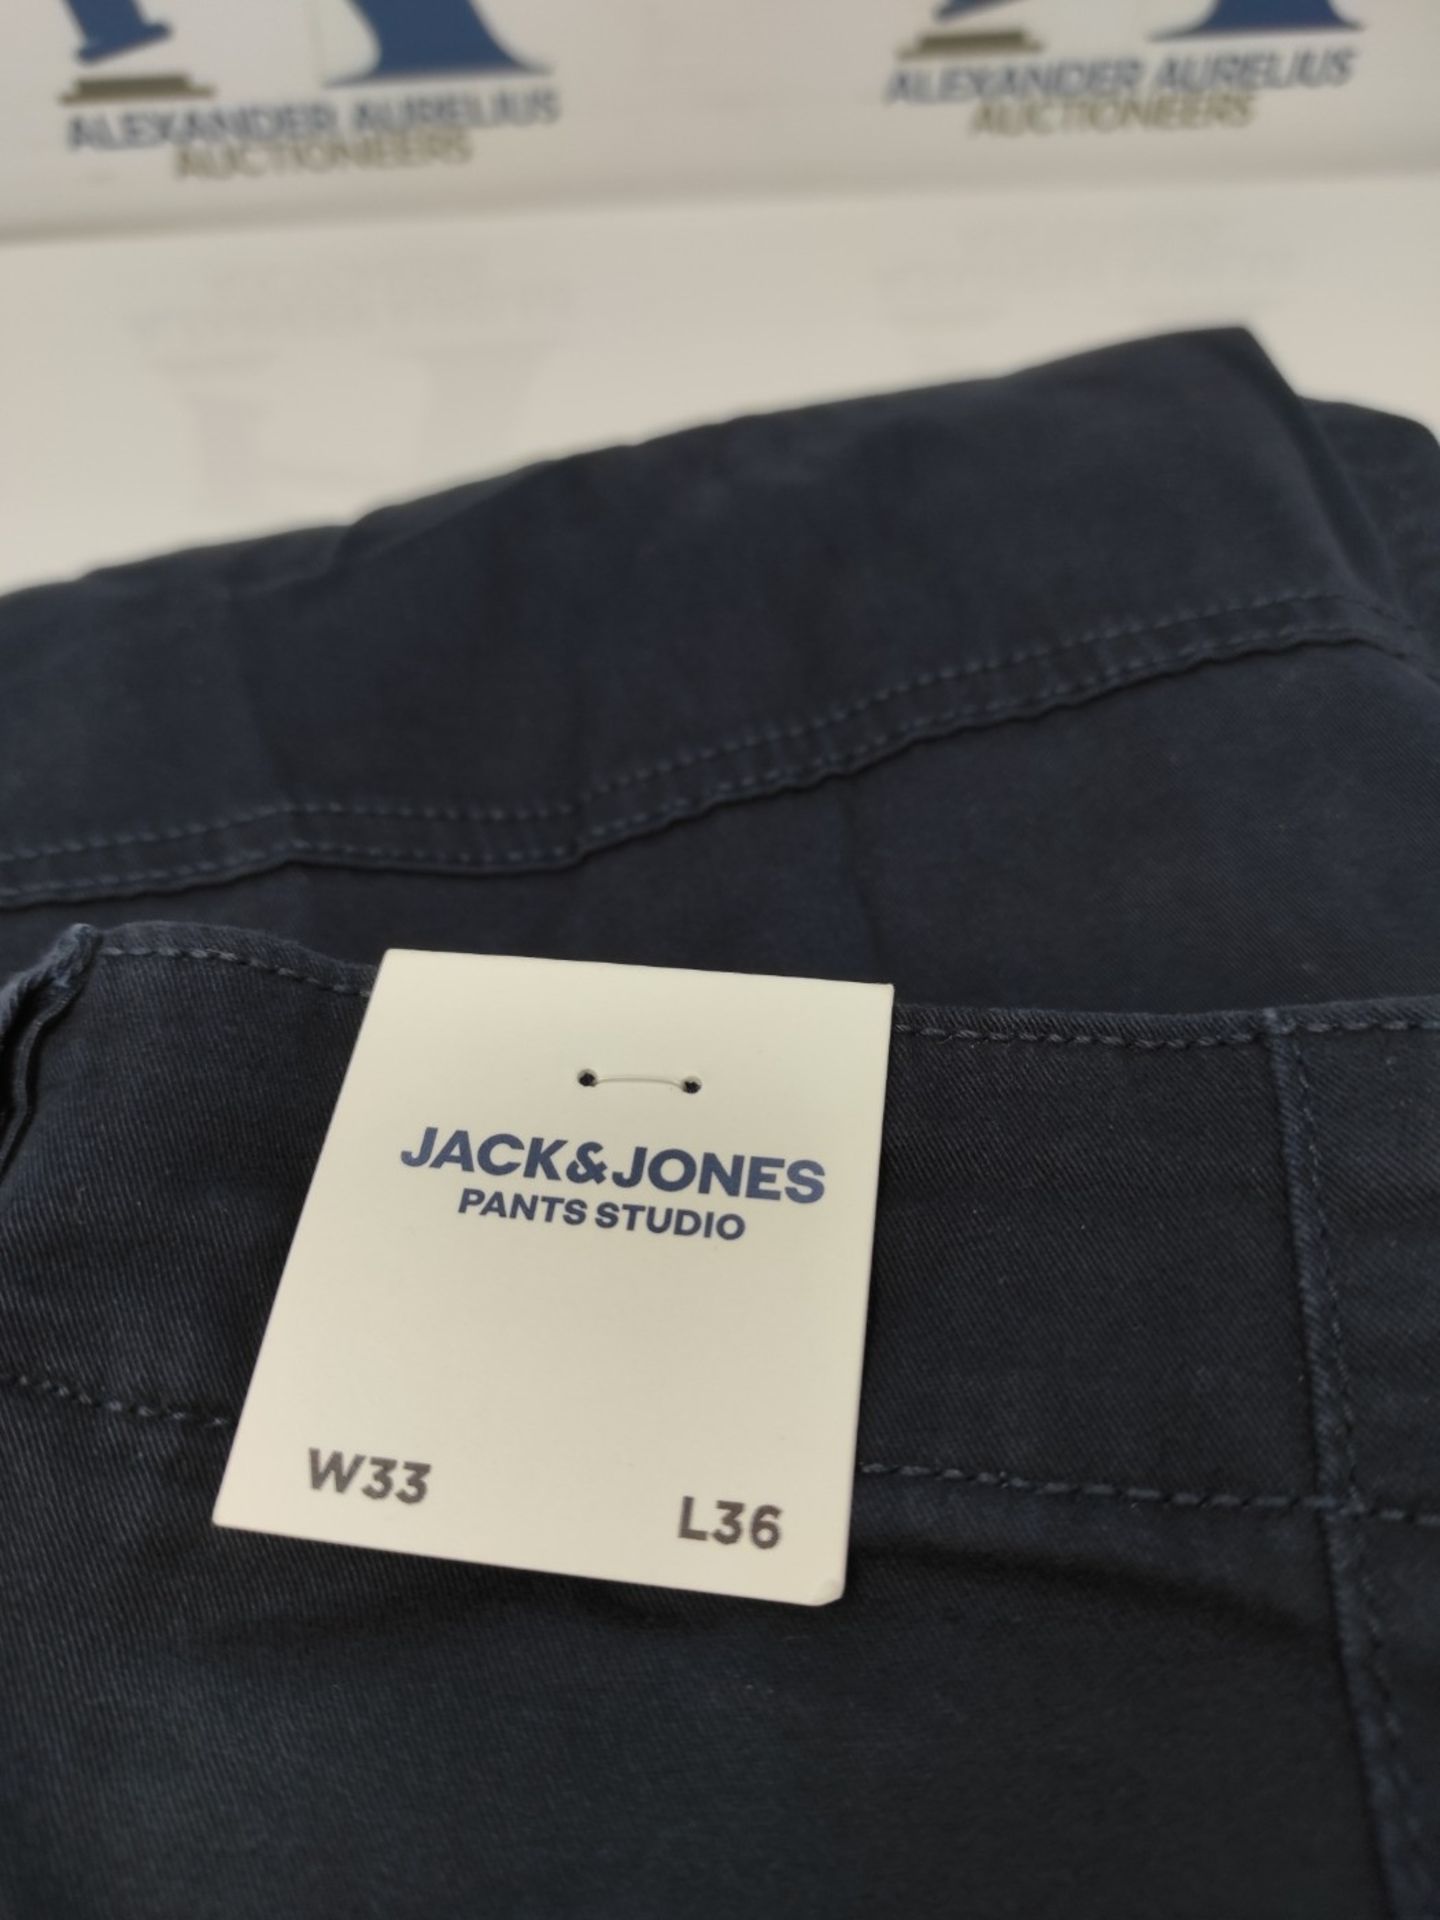 Jack & Jones Men's AKM 542 Paul Flake lifestyle pants, Navy Blazer, 33W / 36L EU - Image 3 of 3